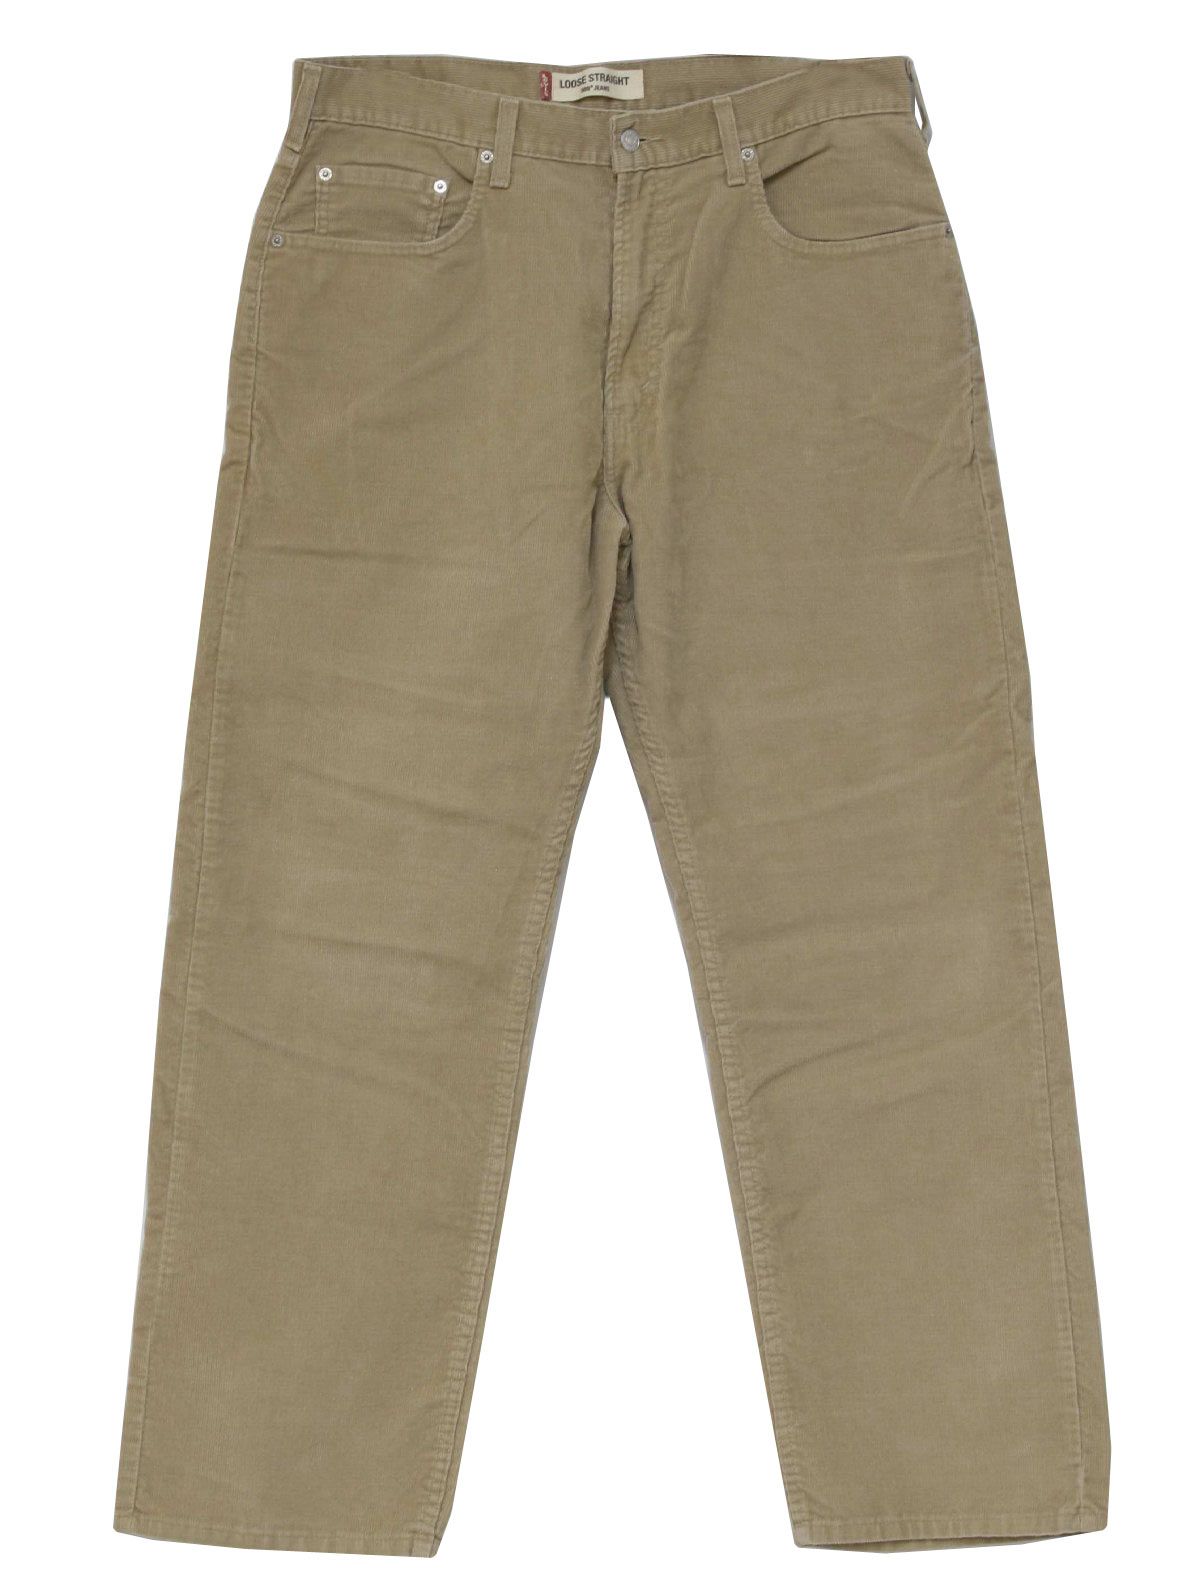 Vintage Levis 569 Nineties Pants: 90s -Levis 569- Mens tan cotton ...